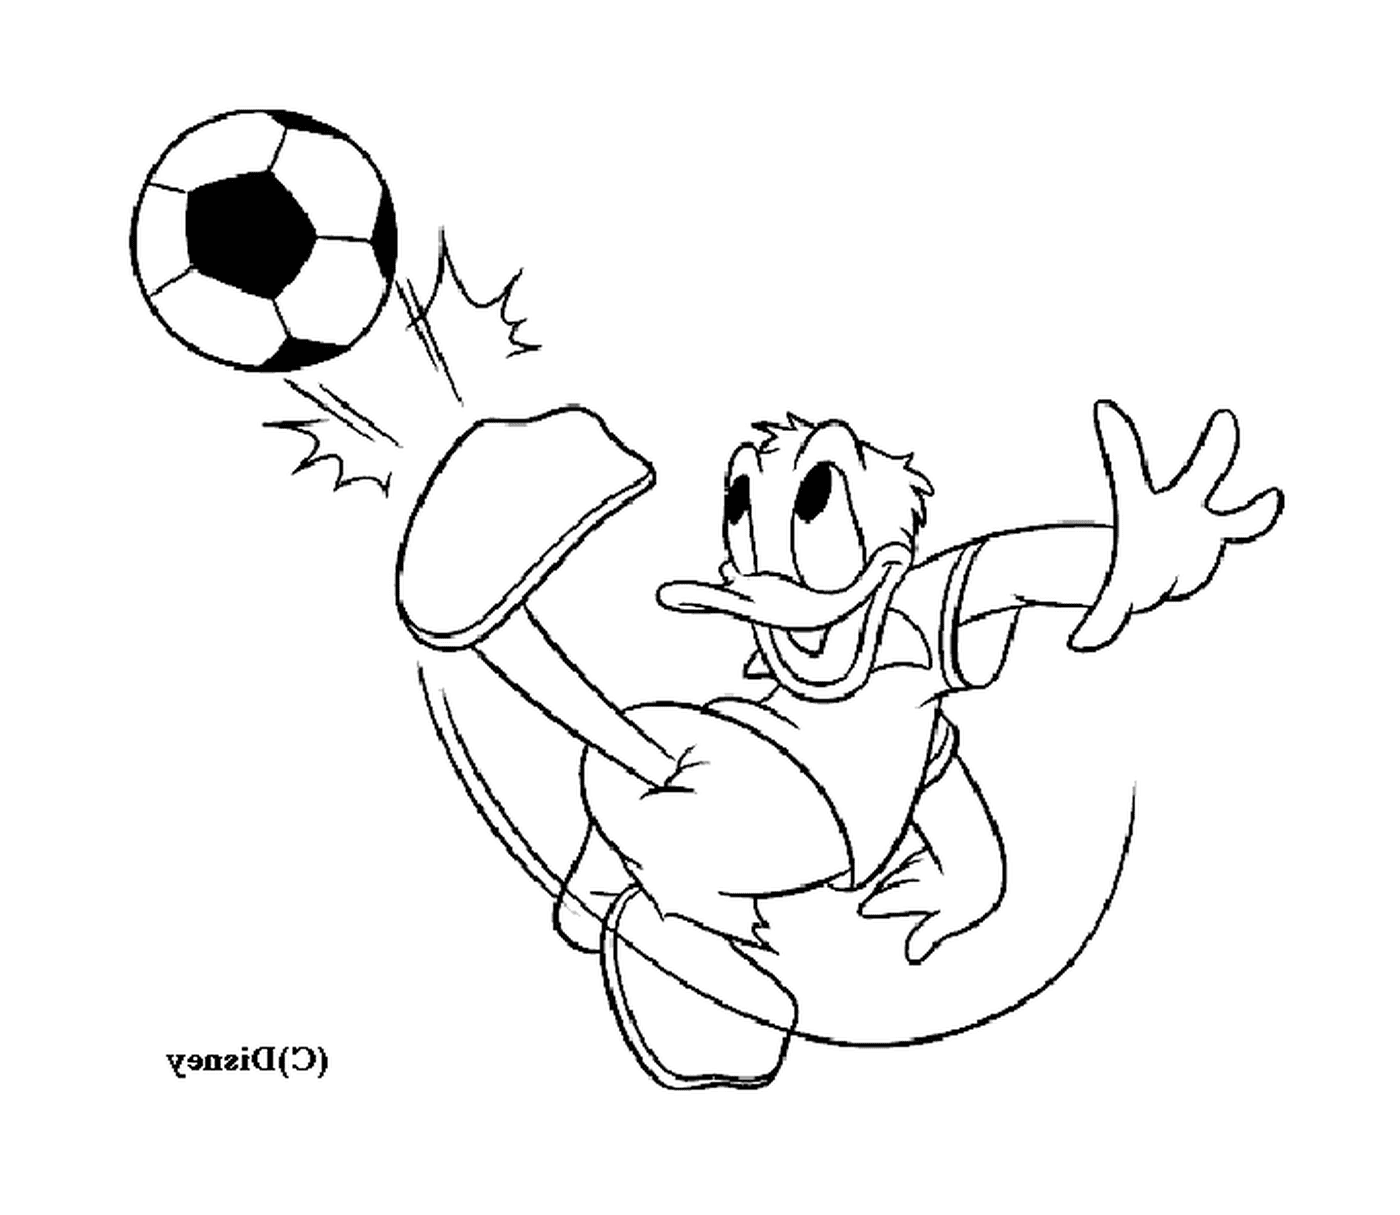   Donald joue au football avec enthousiasme 